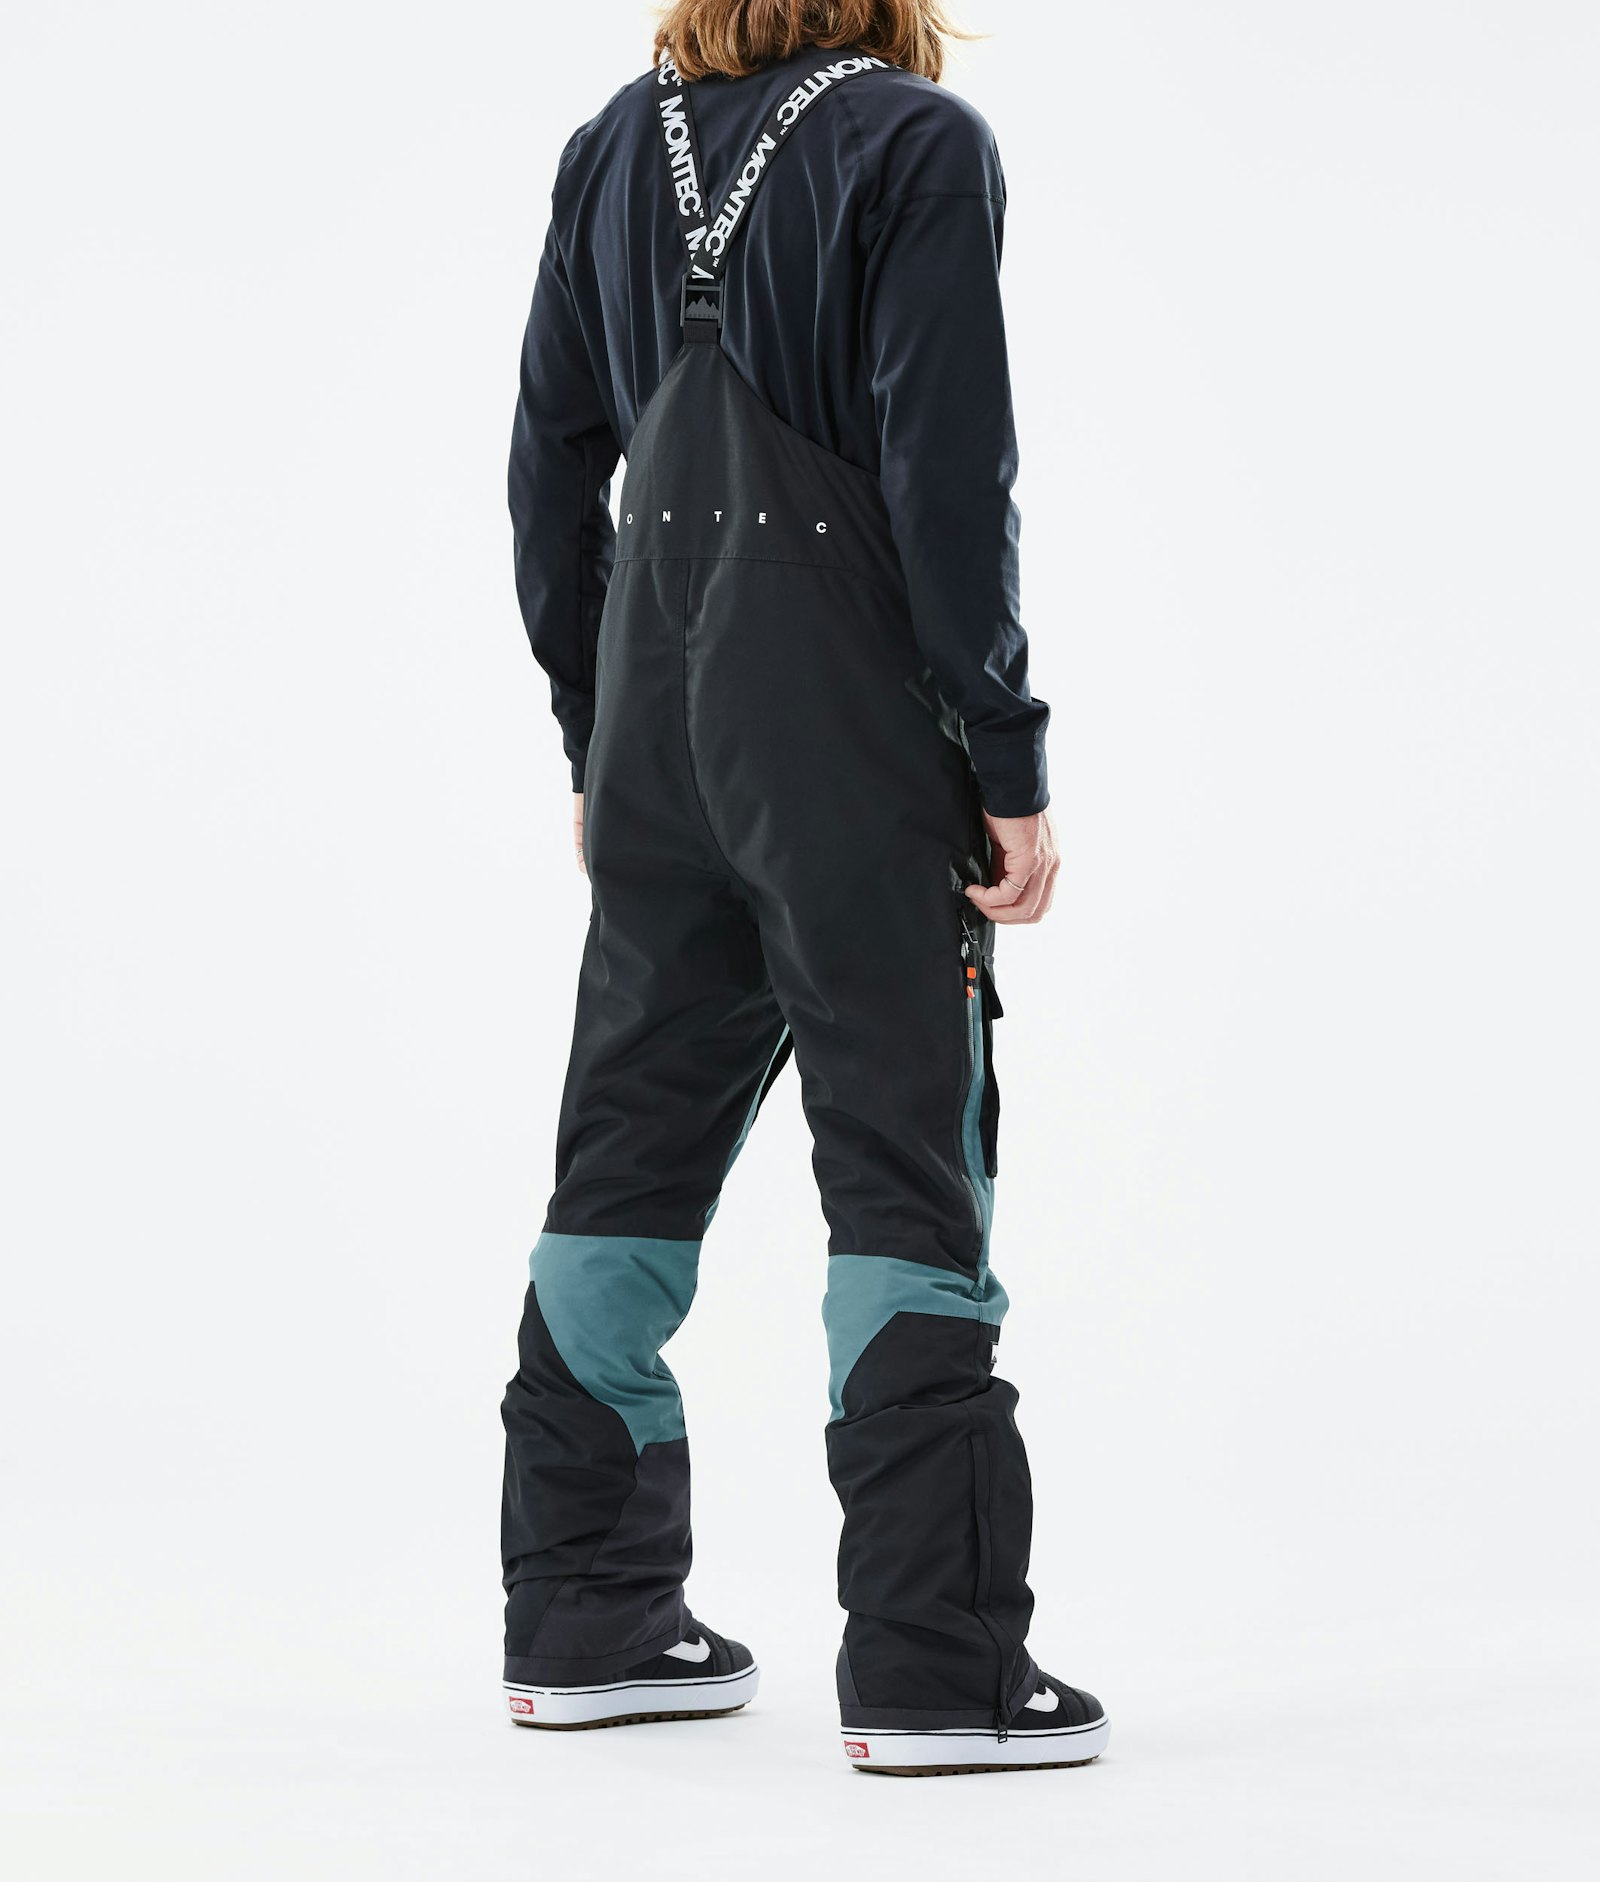 Montec Fawk 2021 Pantalon de Snowboard Homme Black/Atlantic